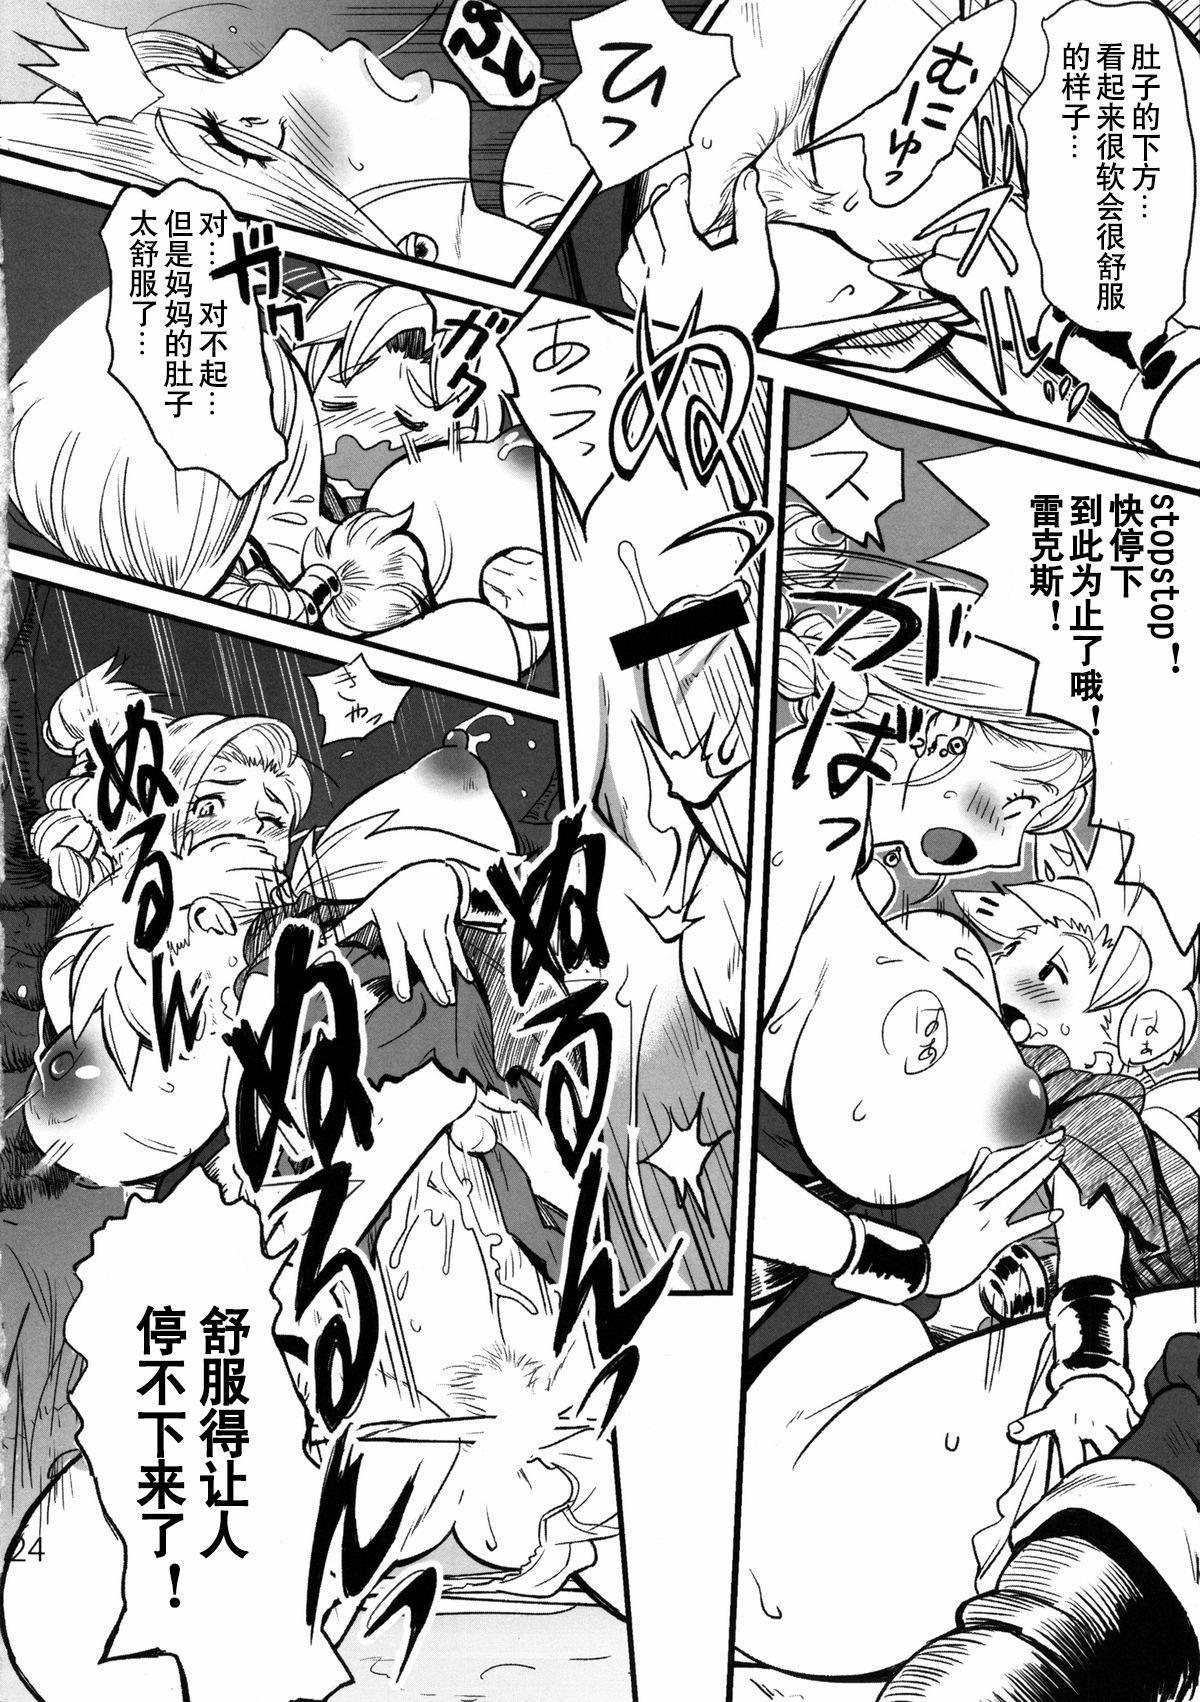 Porno 18 Hagure Boshi - Dragon quest v Adolescente - Page 6